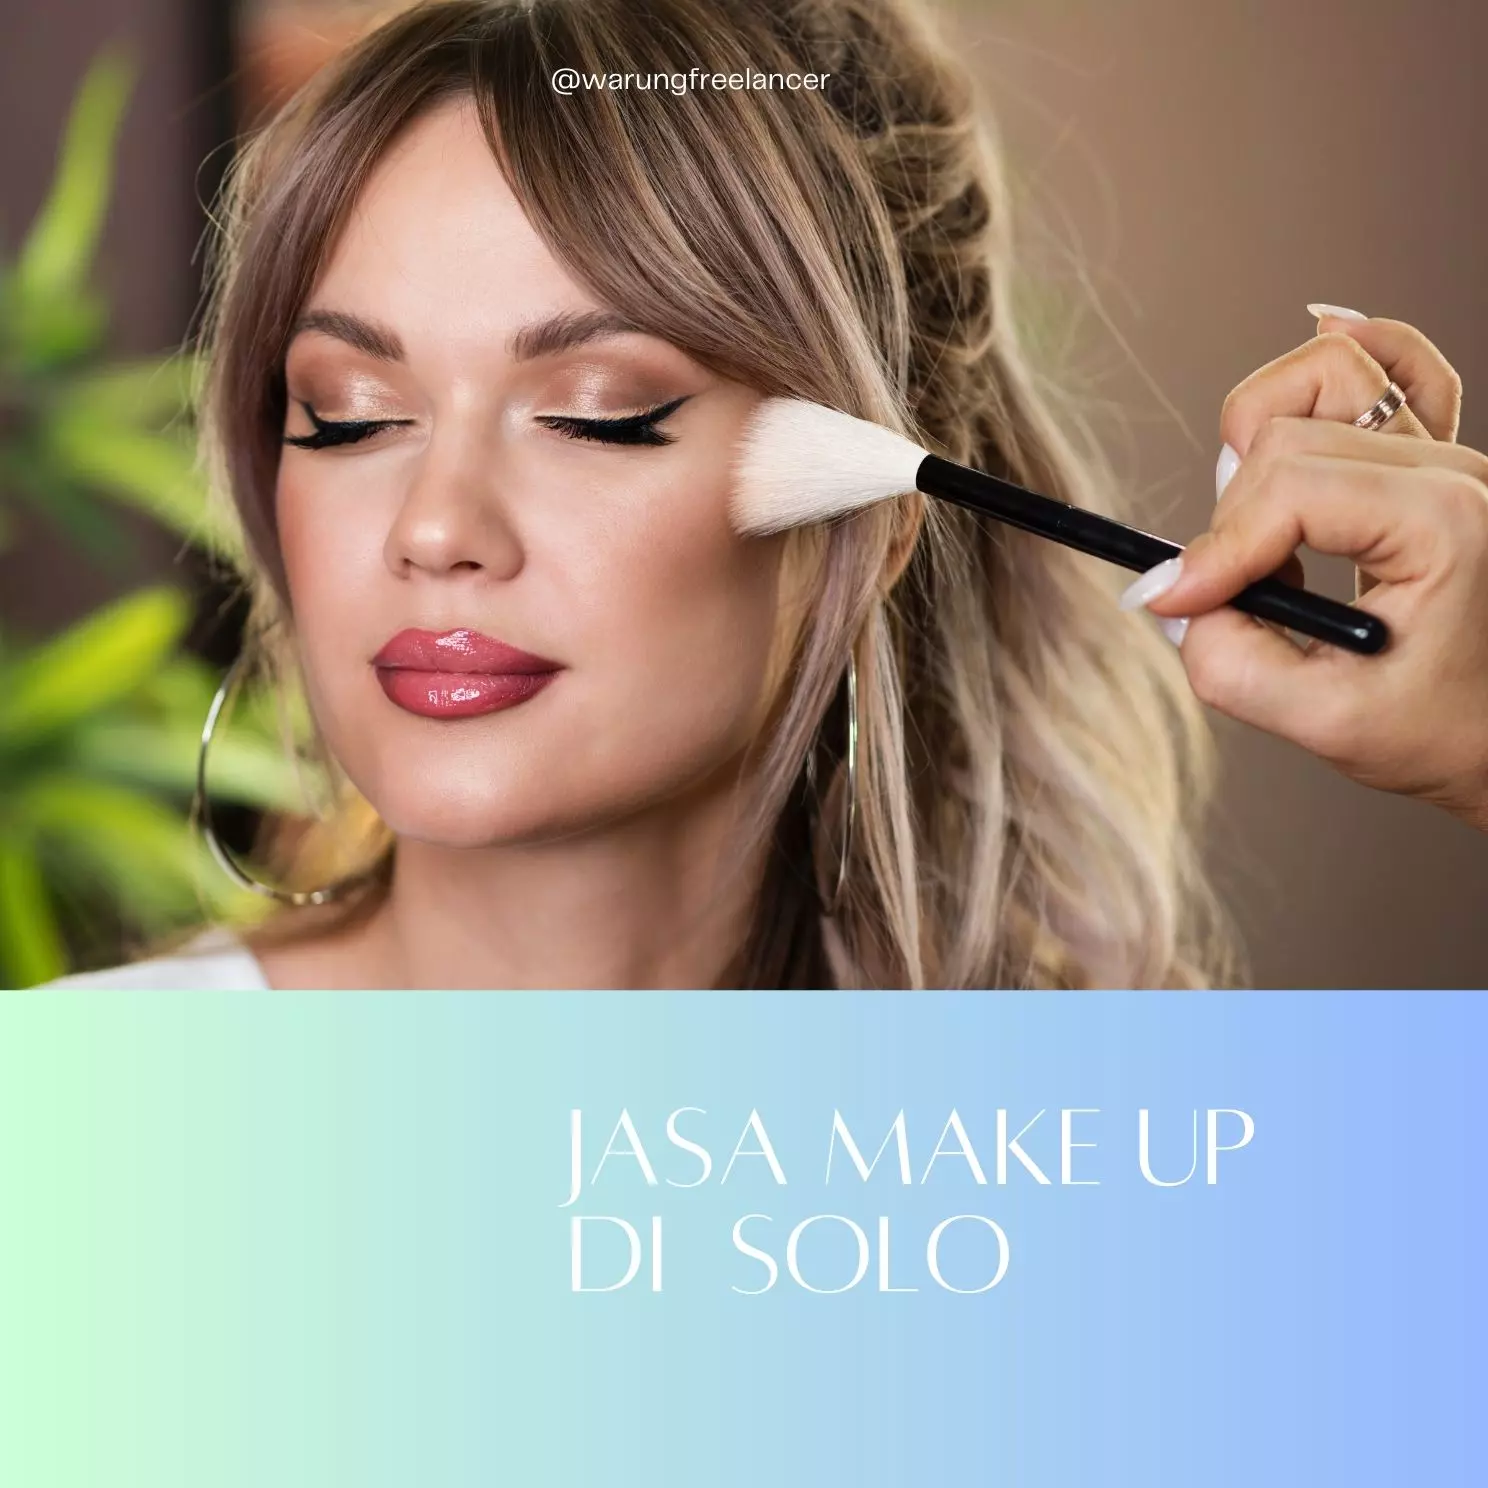 Jasa Make Up di Solo